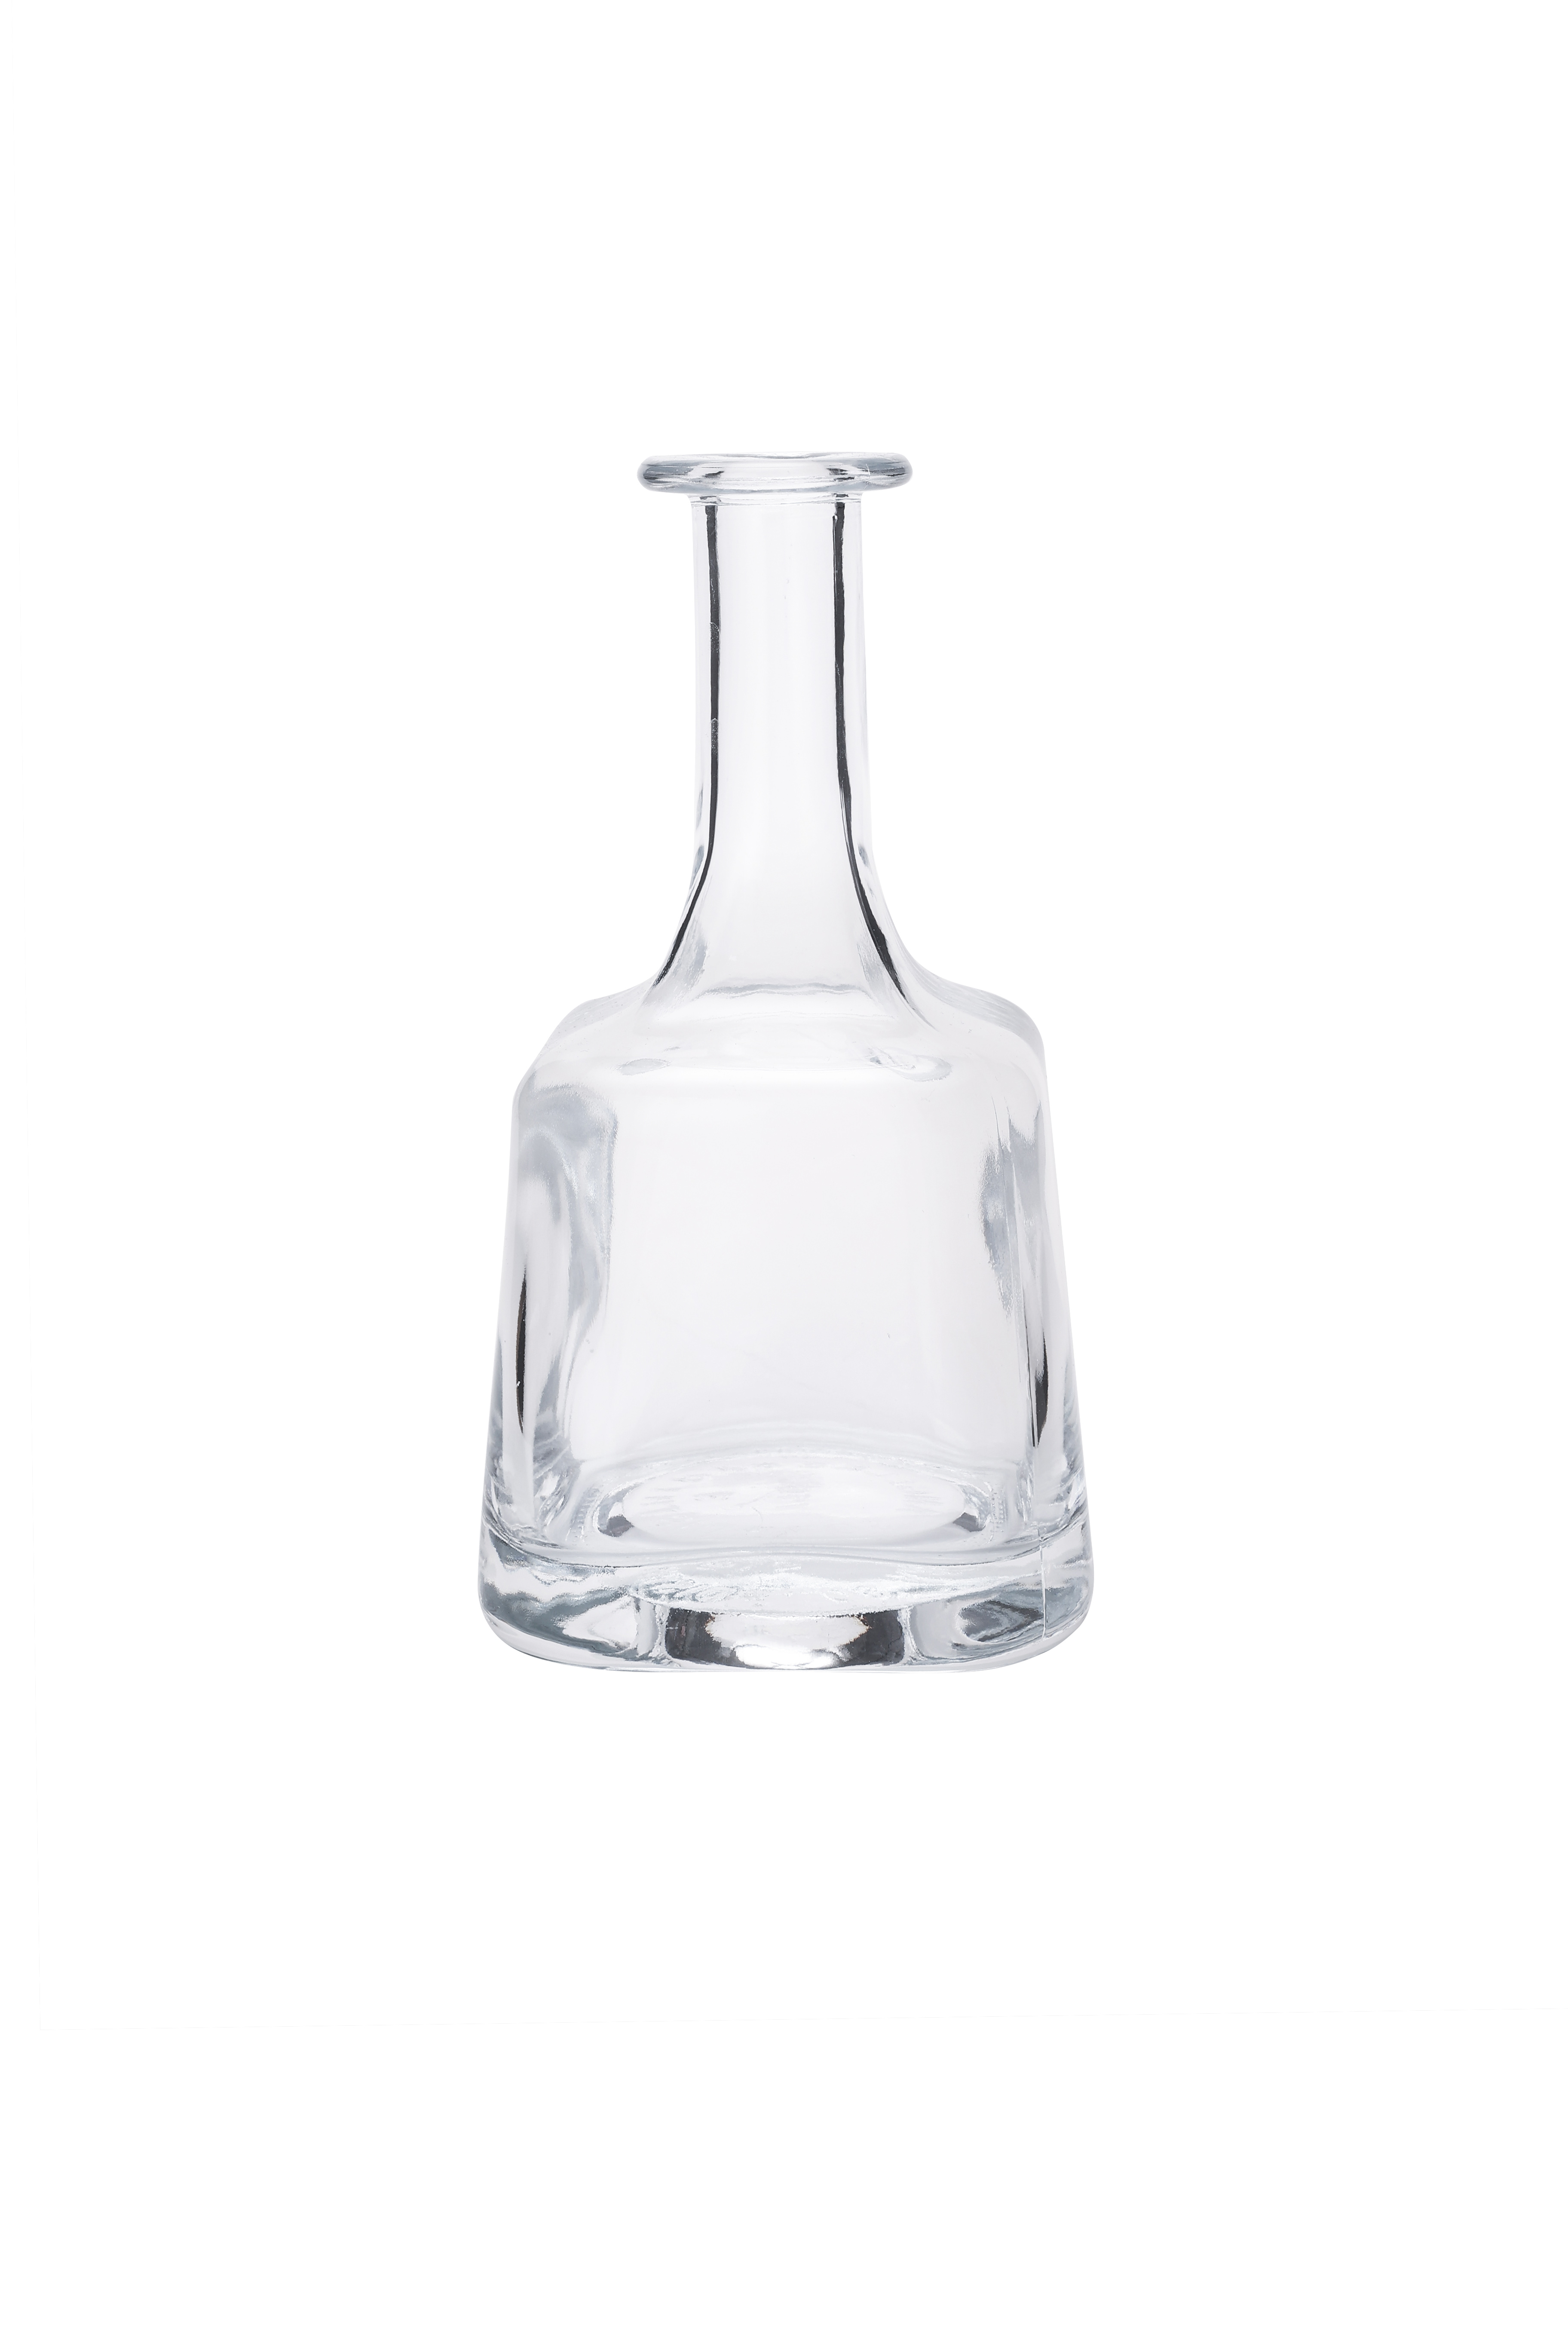 Heavy Base Empty Clear Glass Vodka Whiskey Bottles 375ml 500ml Super Flint Glass Liquor Spirit Bottles With T Cork